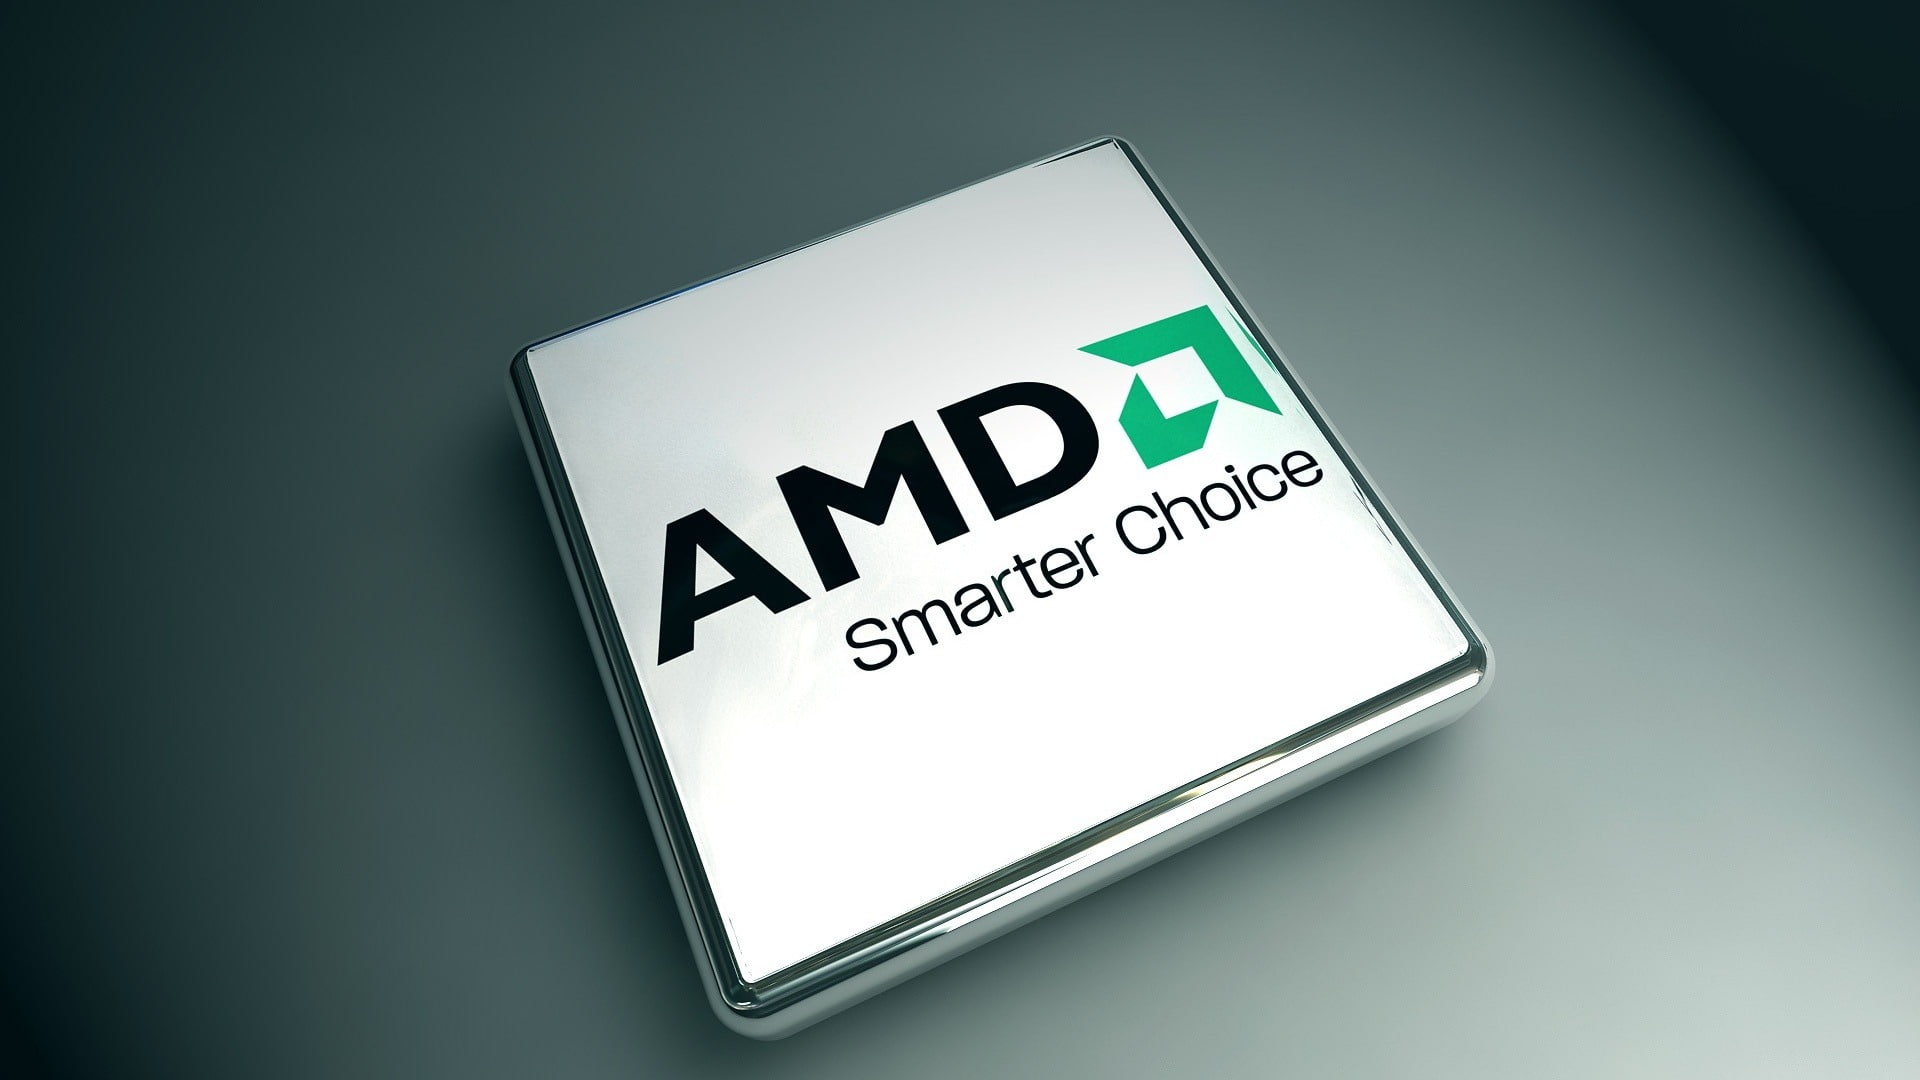 AMD smarter choice-Digital HD Wallpaper, communication, text